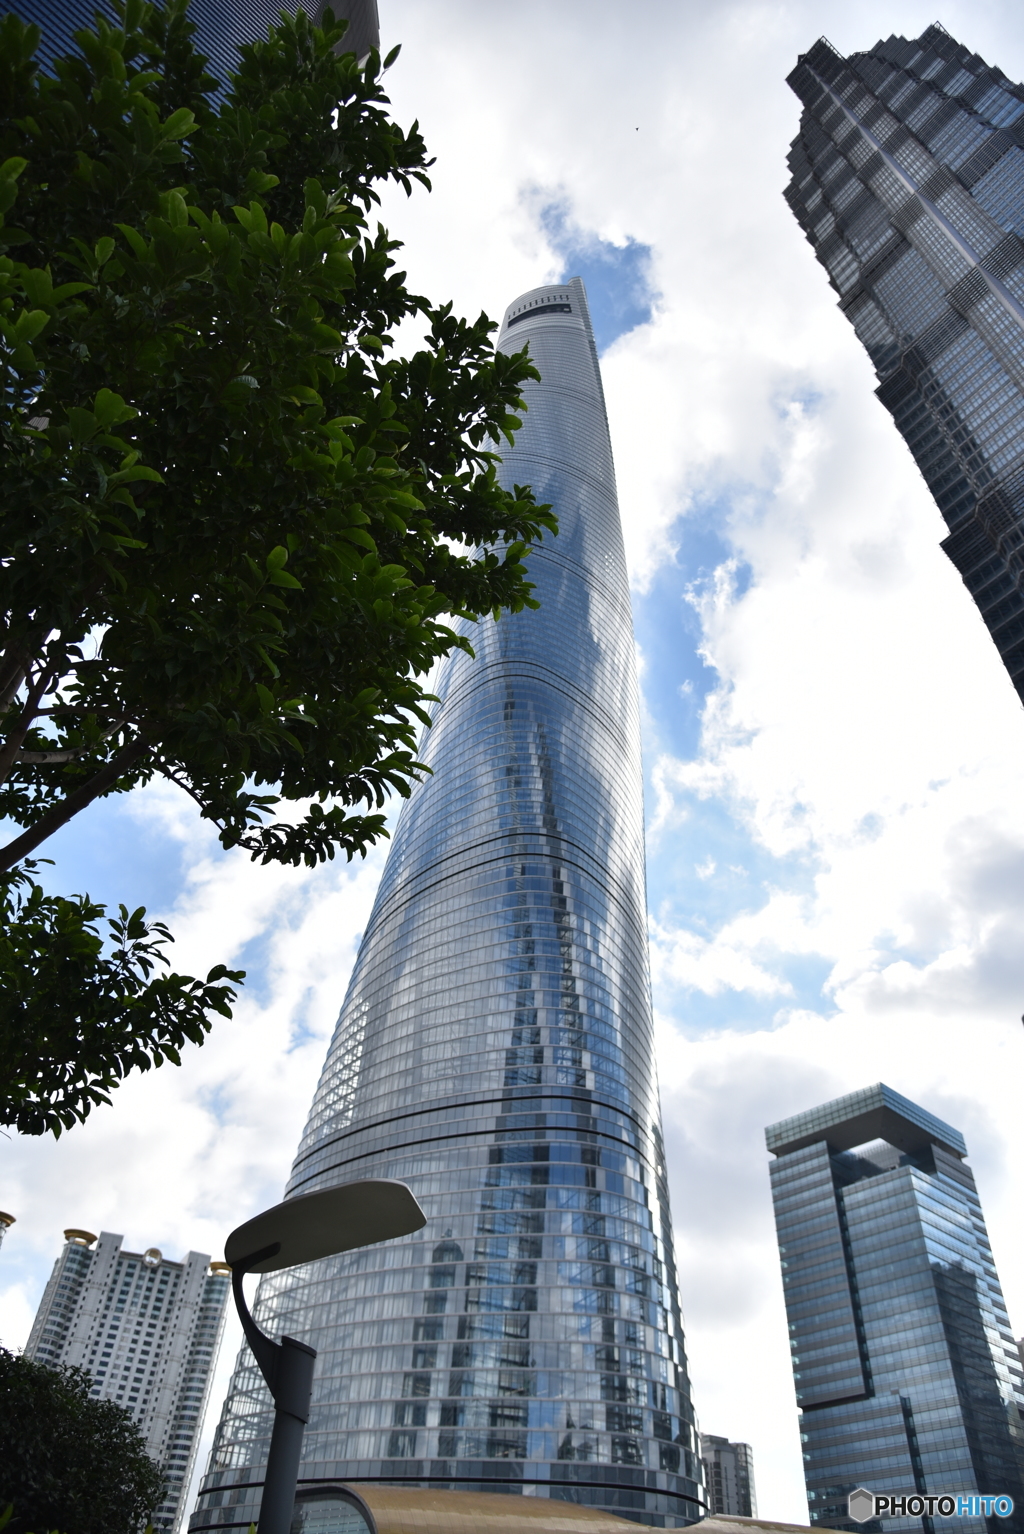 聳り立つ632m (Shanghai Tower)